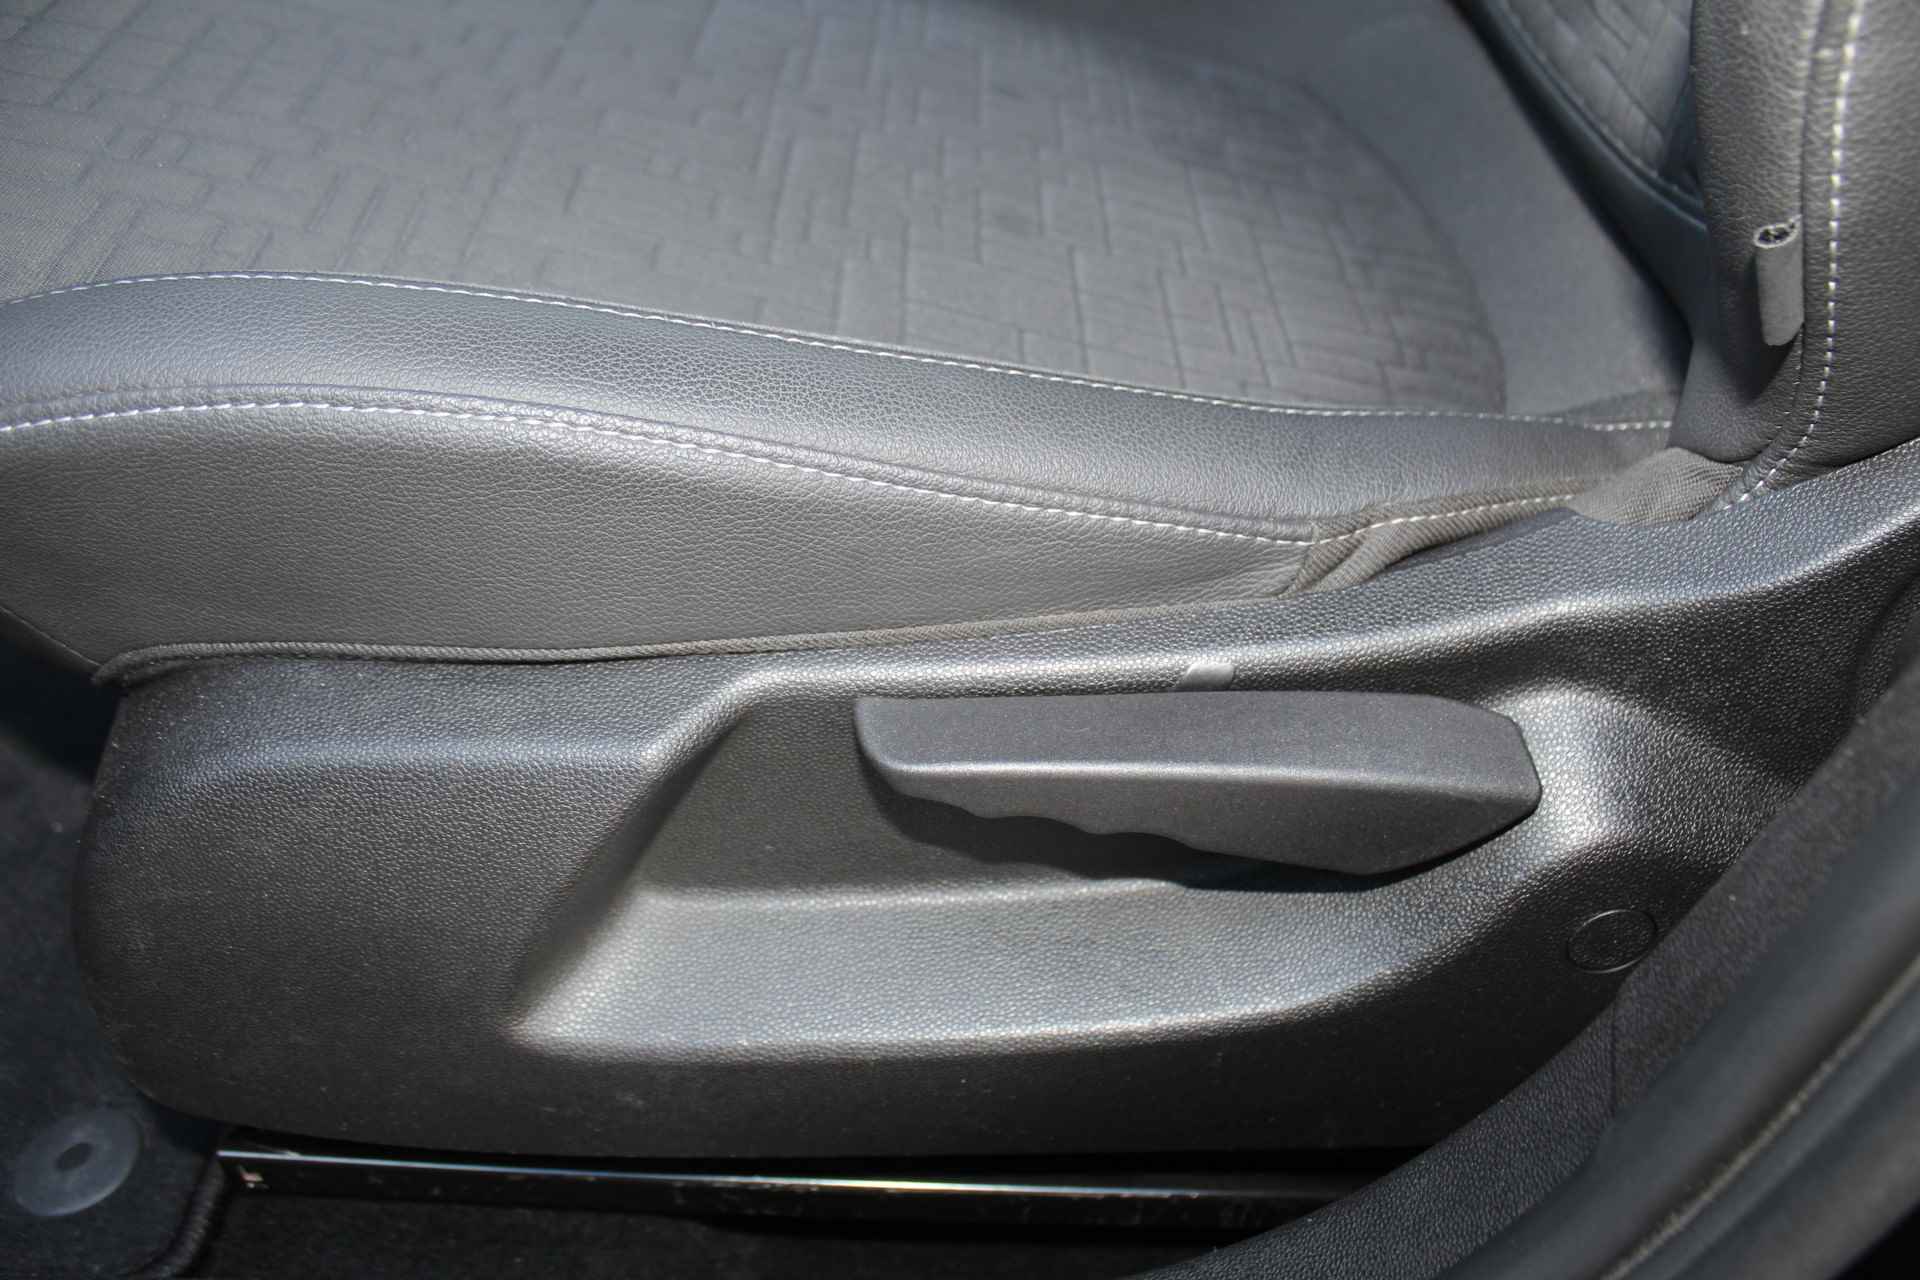 Opel Corsa 1.0-90pk Turbo 'Online Edition'. Erg nette en goed onderhouden Opel Corsa 1.0-90pk Turbo 5drs.. Volautm. airco, cruise control, navigatie, trekhaak afneembare kogel, metallic lak, parkeersensoren v+a, LM wielen, telefoonvoorb., 5 deuren etc. - 21/45